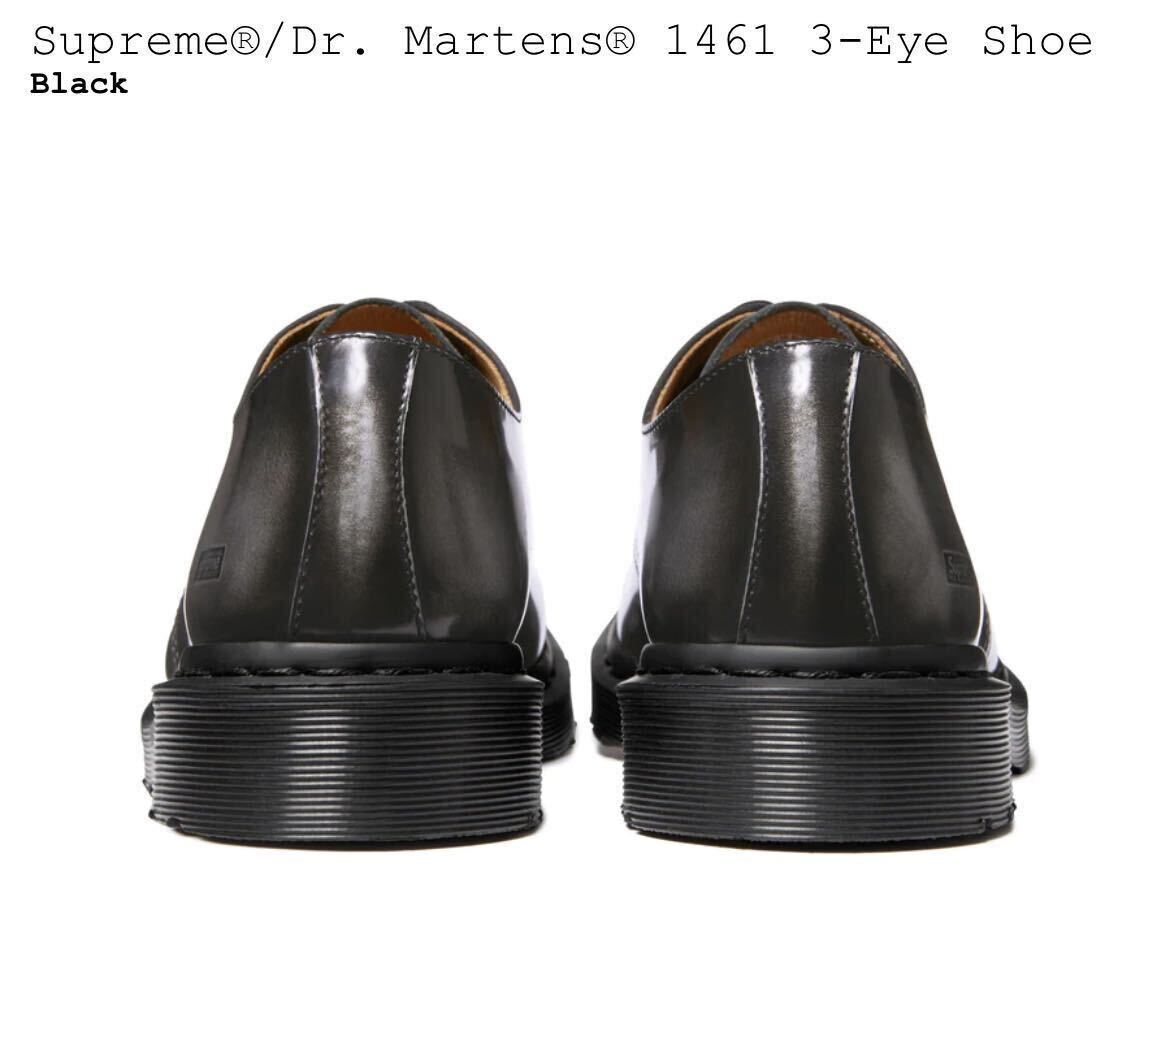 新品 Supreme Dr Martens 1461 3-Eye Shoe US10 black / シュプリーム ドクター マーチン 3アイホールシューズ 28cm Black 黒 24SS 即納_画像3